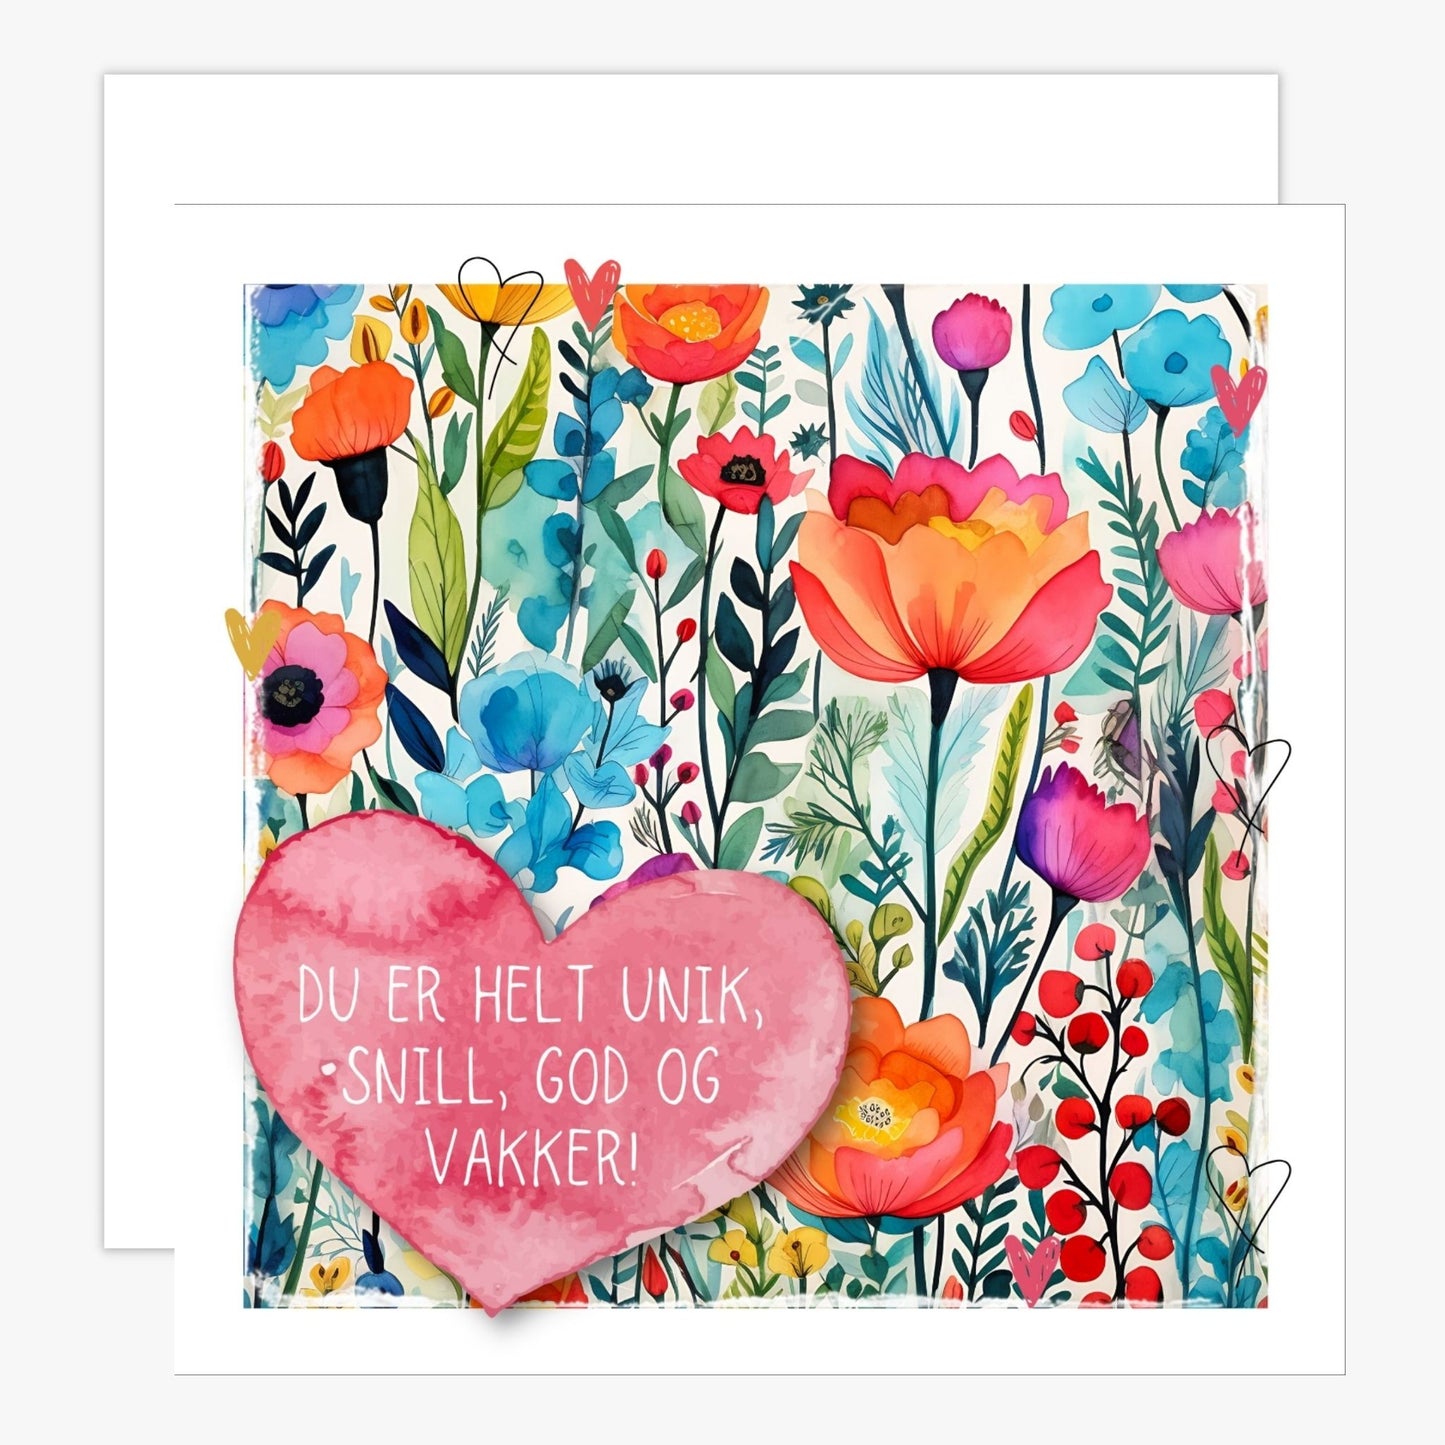 Kort med ros hjerte med tekst "Du er helt unik, snill, god og vakker!" Bakgrunn med fargerik blomstereng. Konvolutt er inkludert.